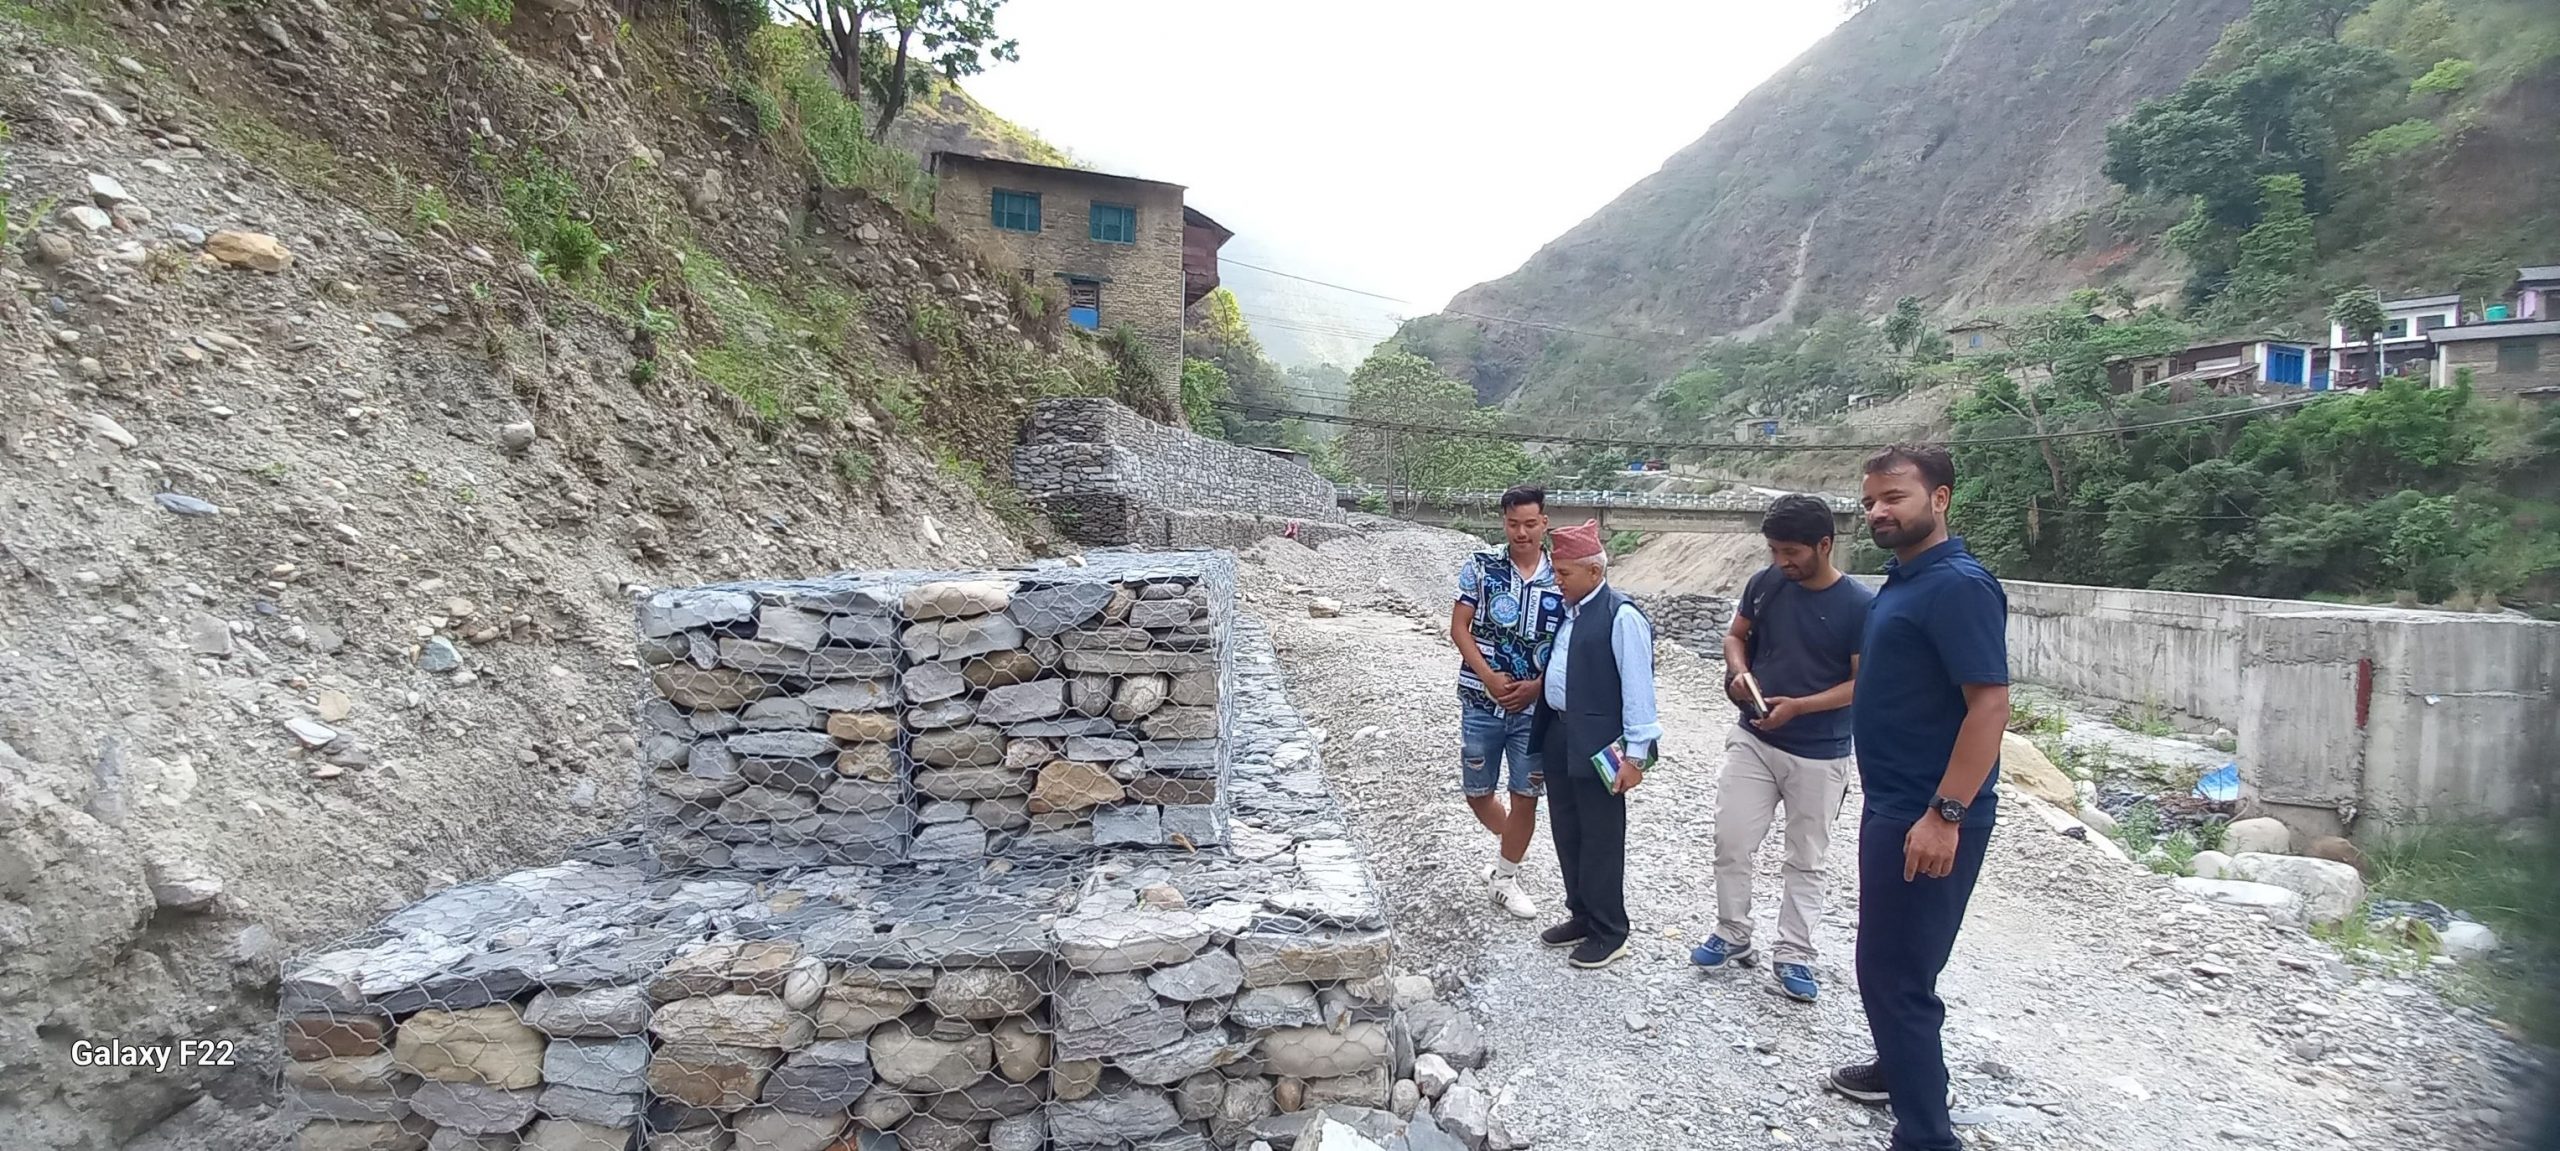 भू-क्षय रोक्न गण्डकीका पाँच जिल्लामा १६६ योजना निर्माण